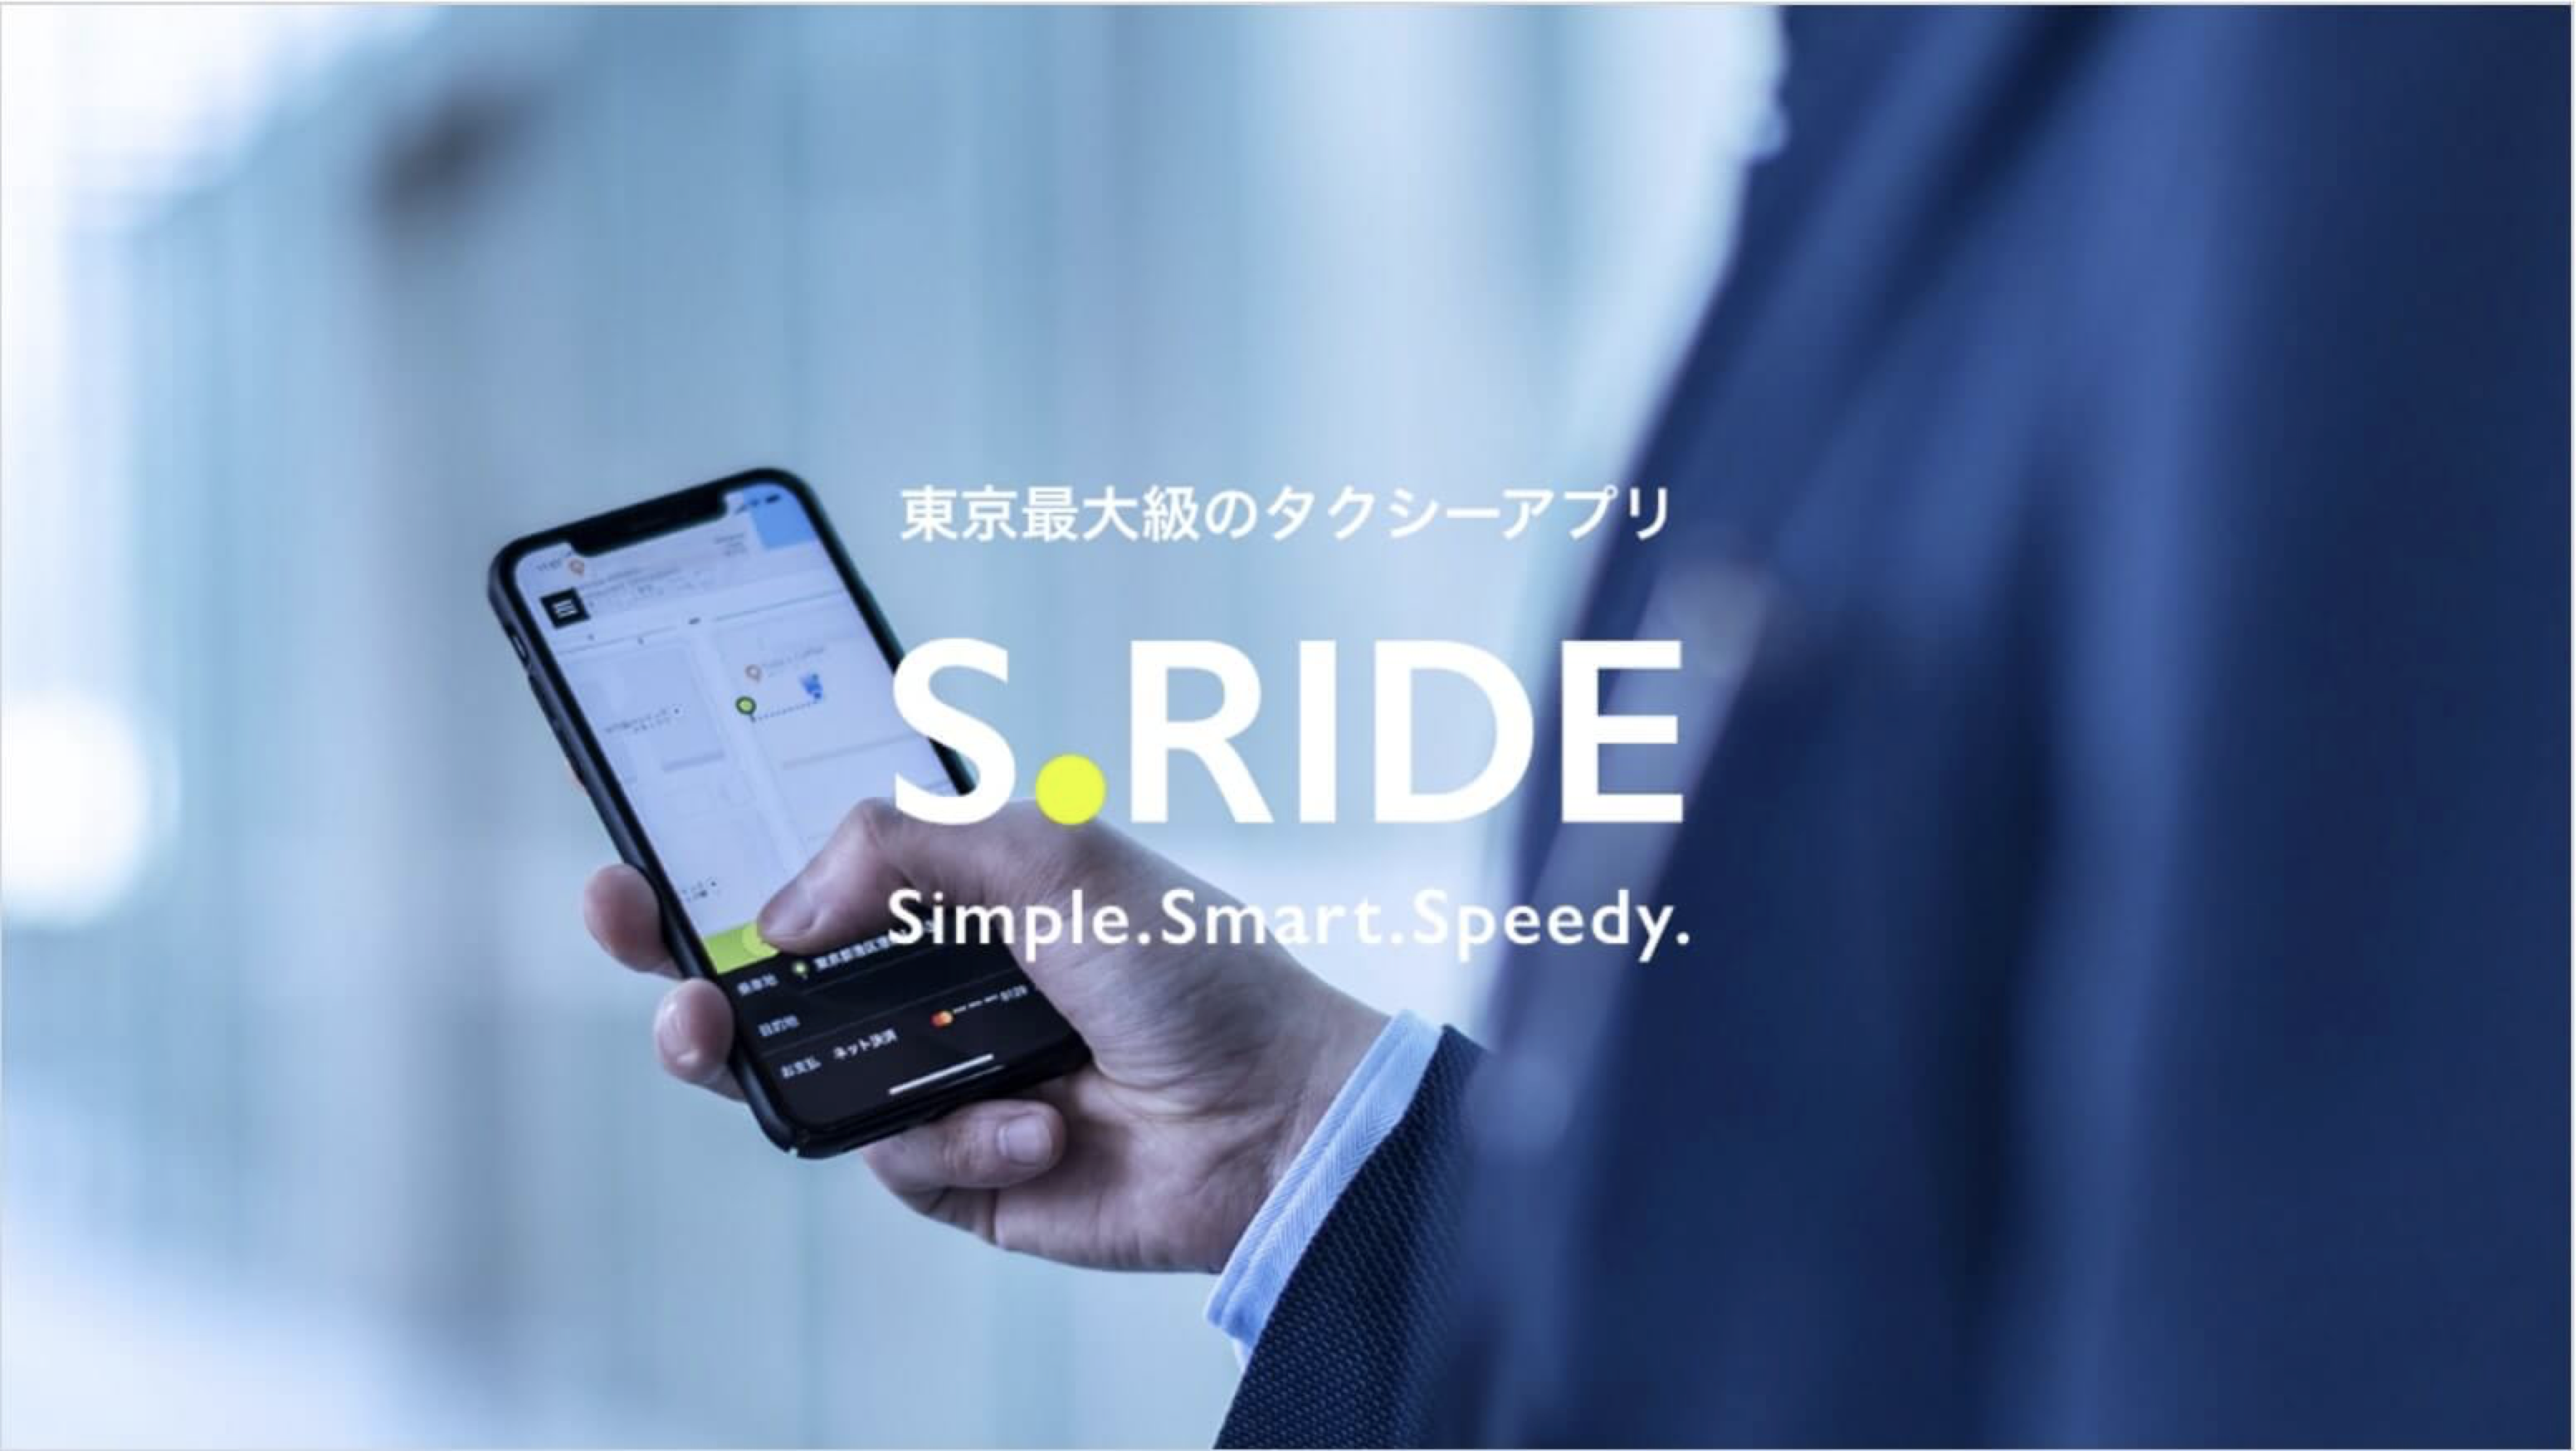 名古屋で使えるタクシーアプリとクーポン情報